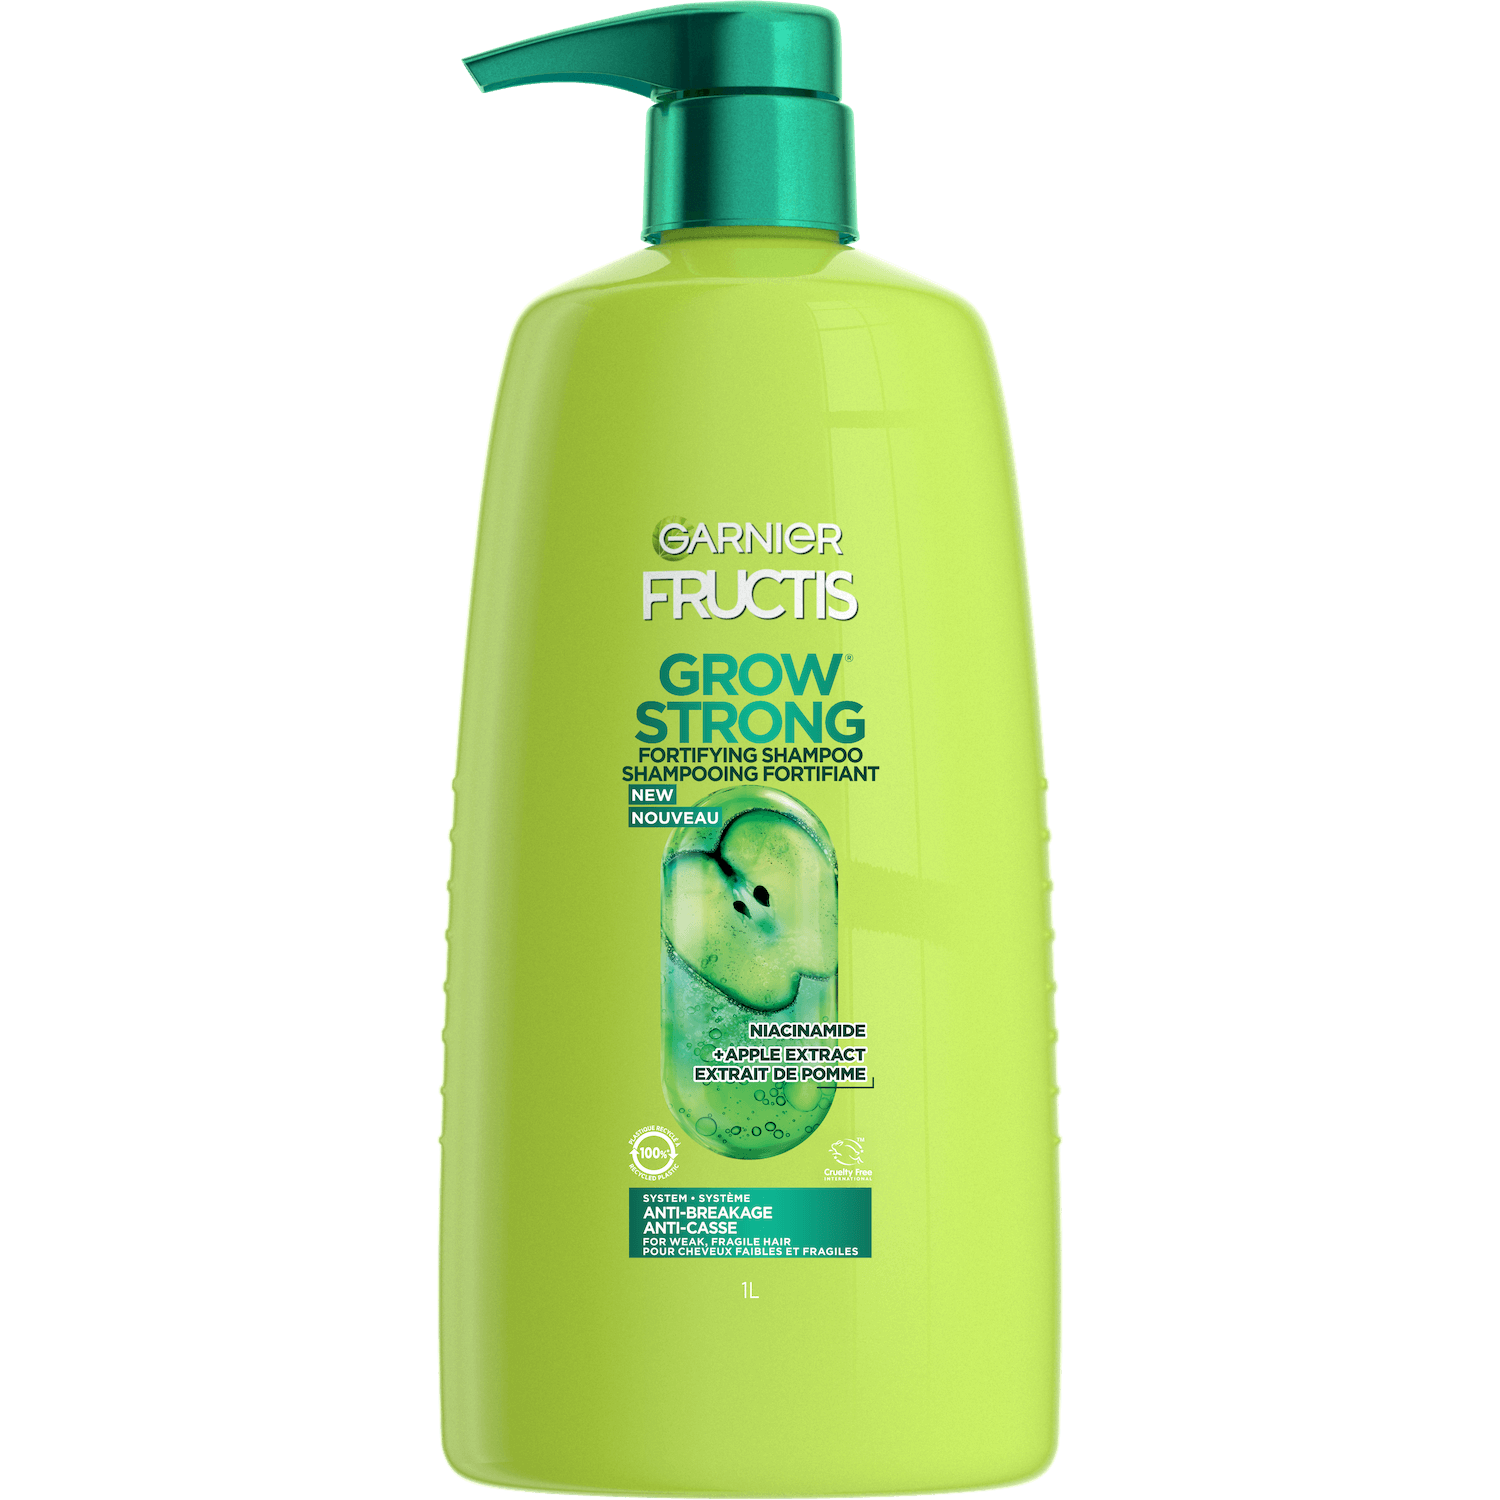 GAR 3D PKG Fructis Reno 2022 GrowStrong Shampoo Front 1L